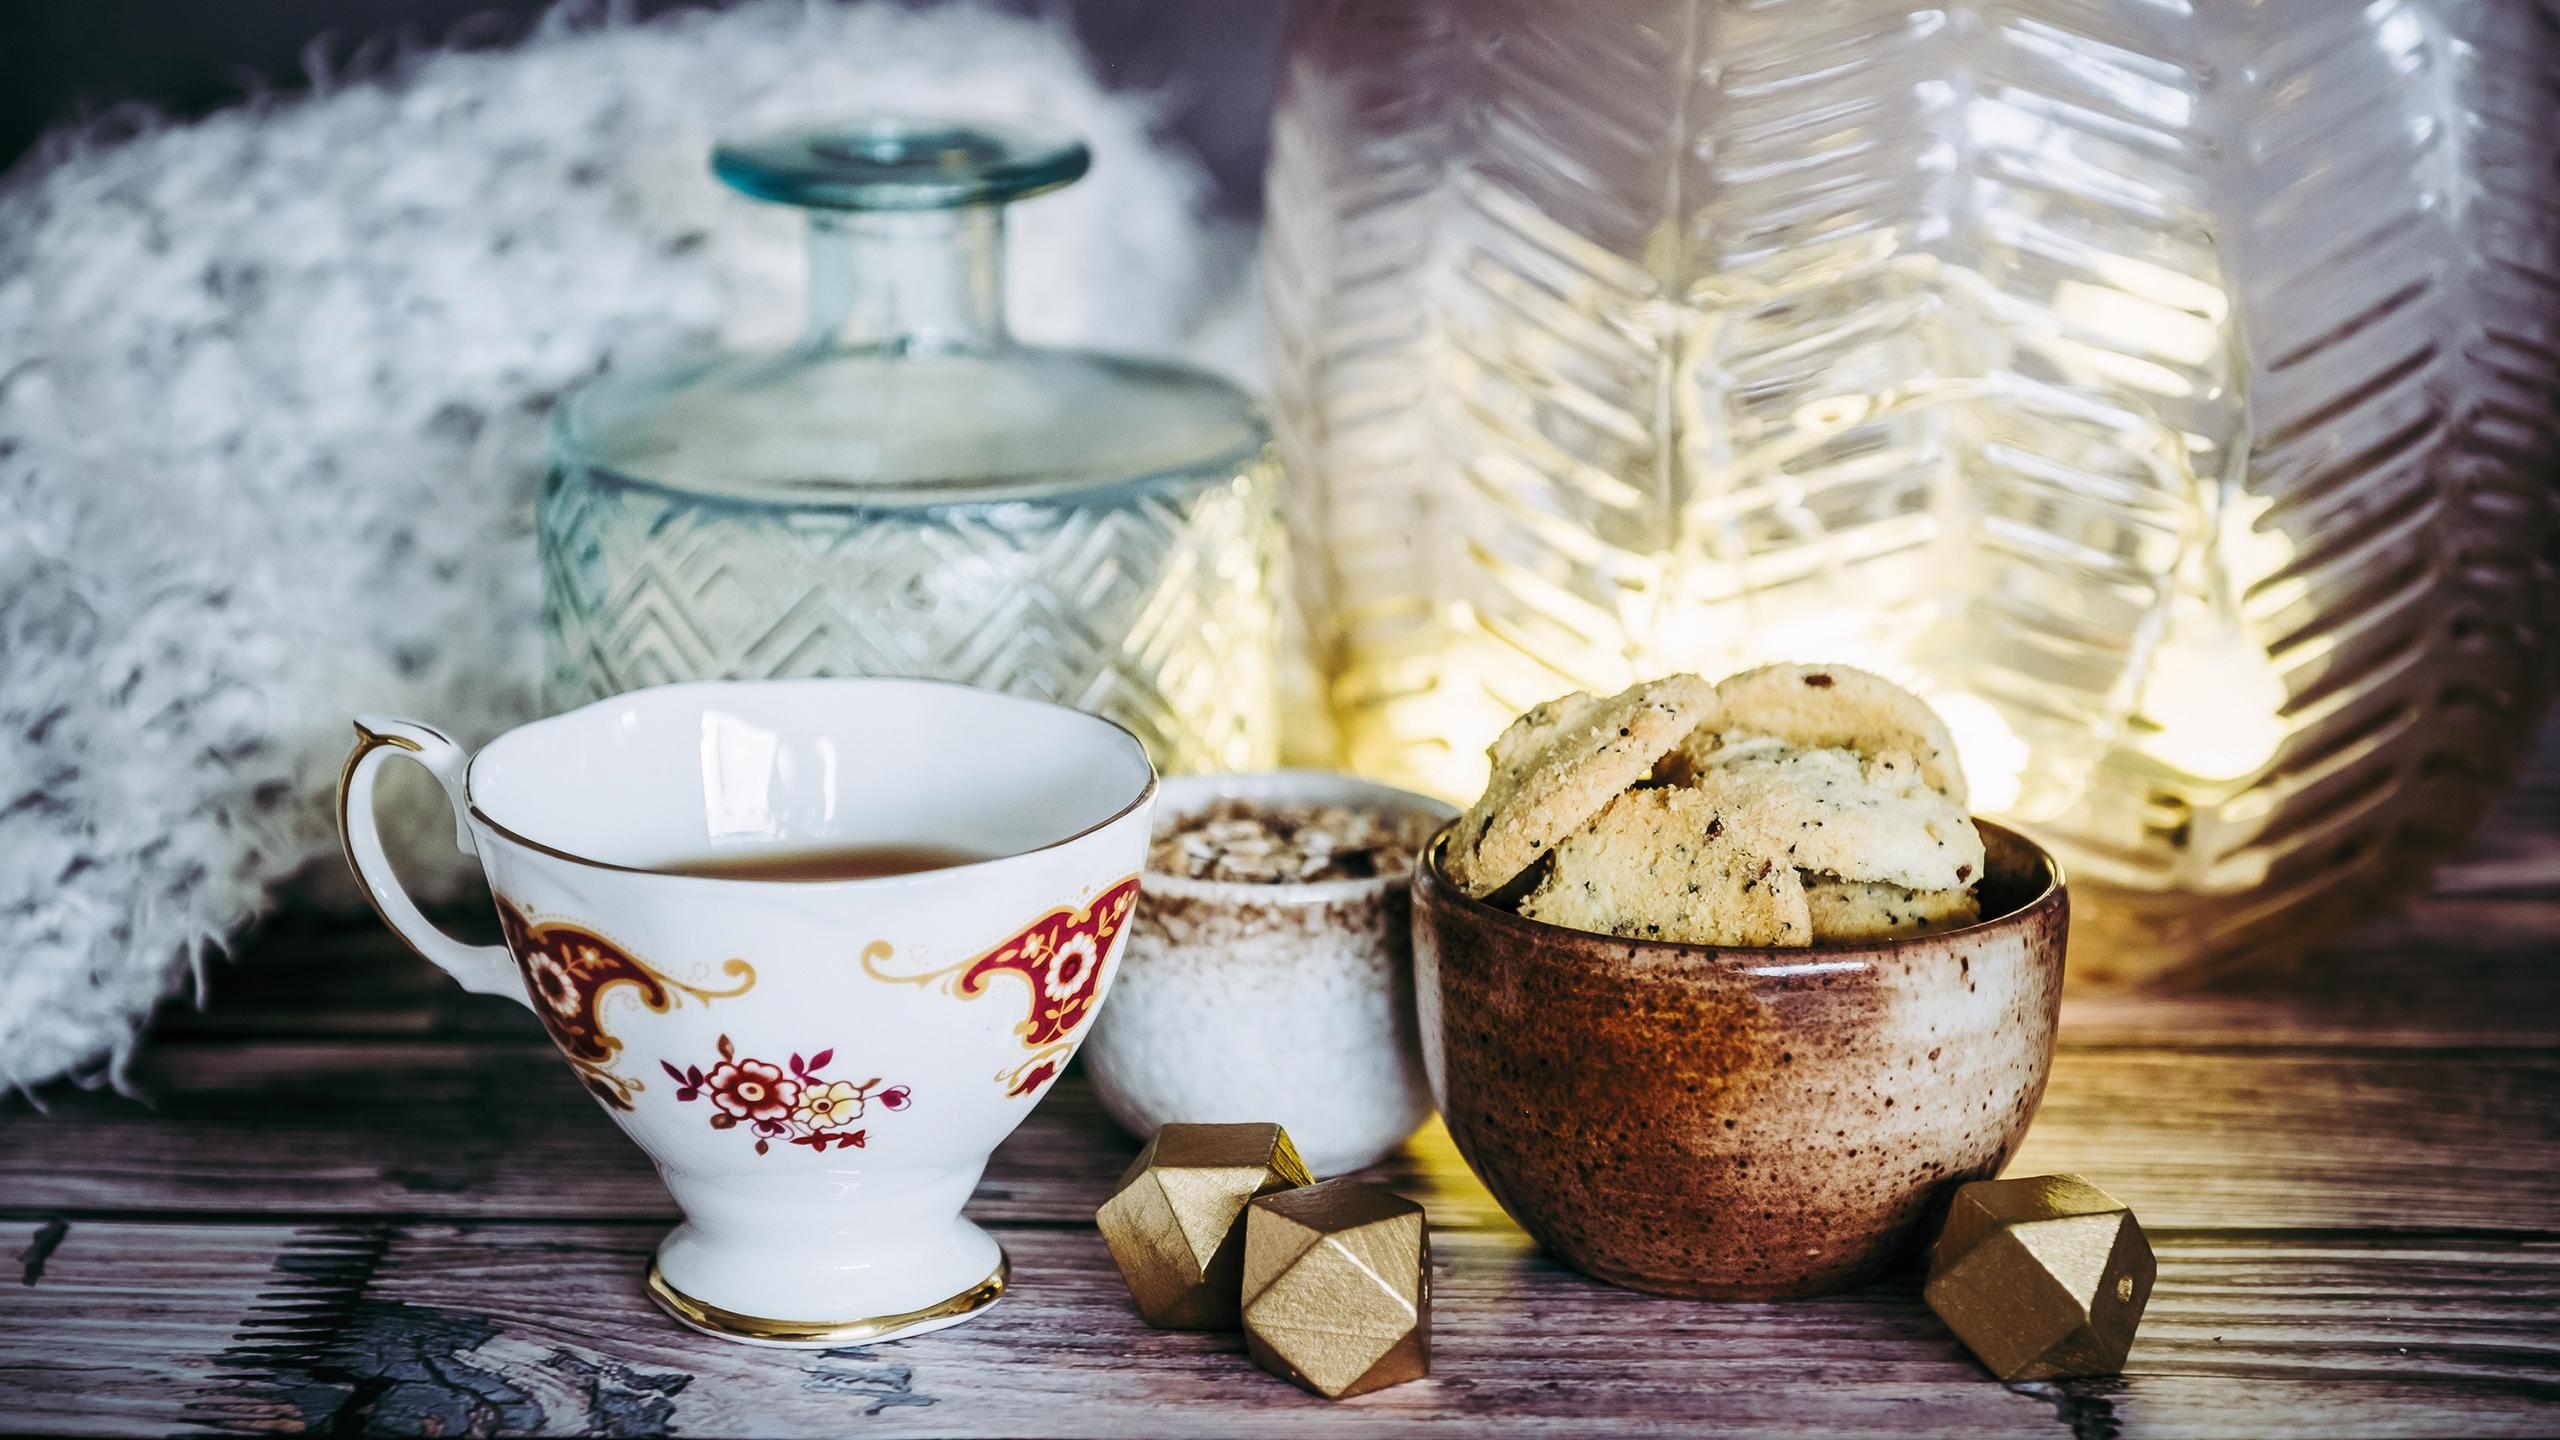 Une tasse de thé et des cookies sont déposées sur une table, à côté de vases et d'un plaid en laine